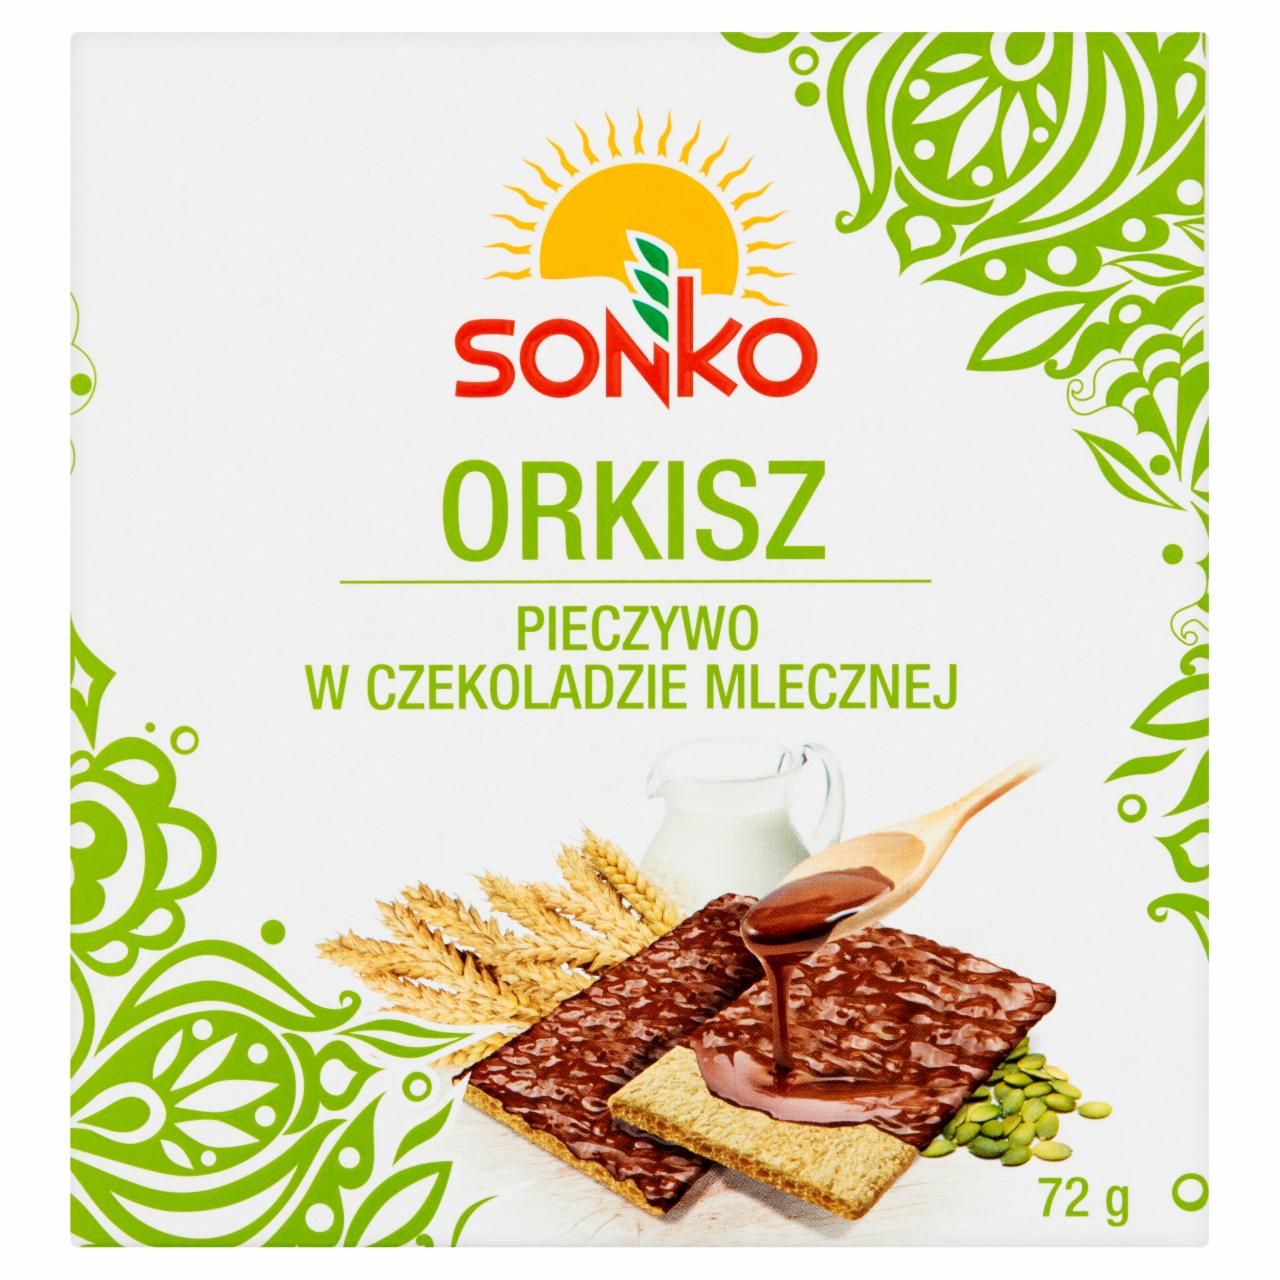 Zdjęcia - Sonko Pieczywo w czekoladzie mlecznej orkisz 72 g